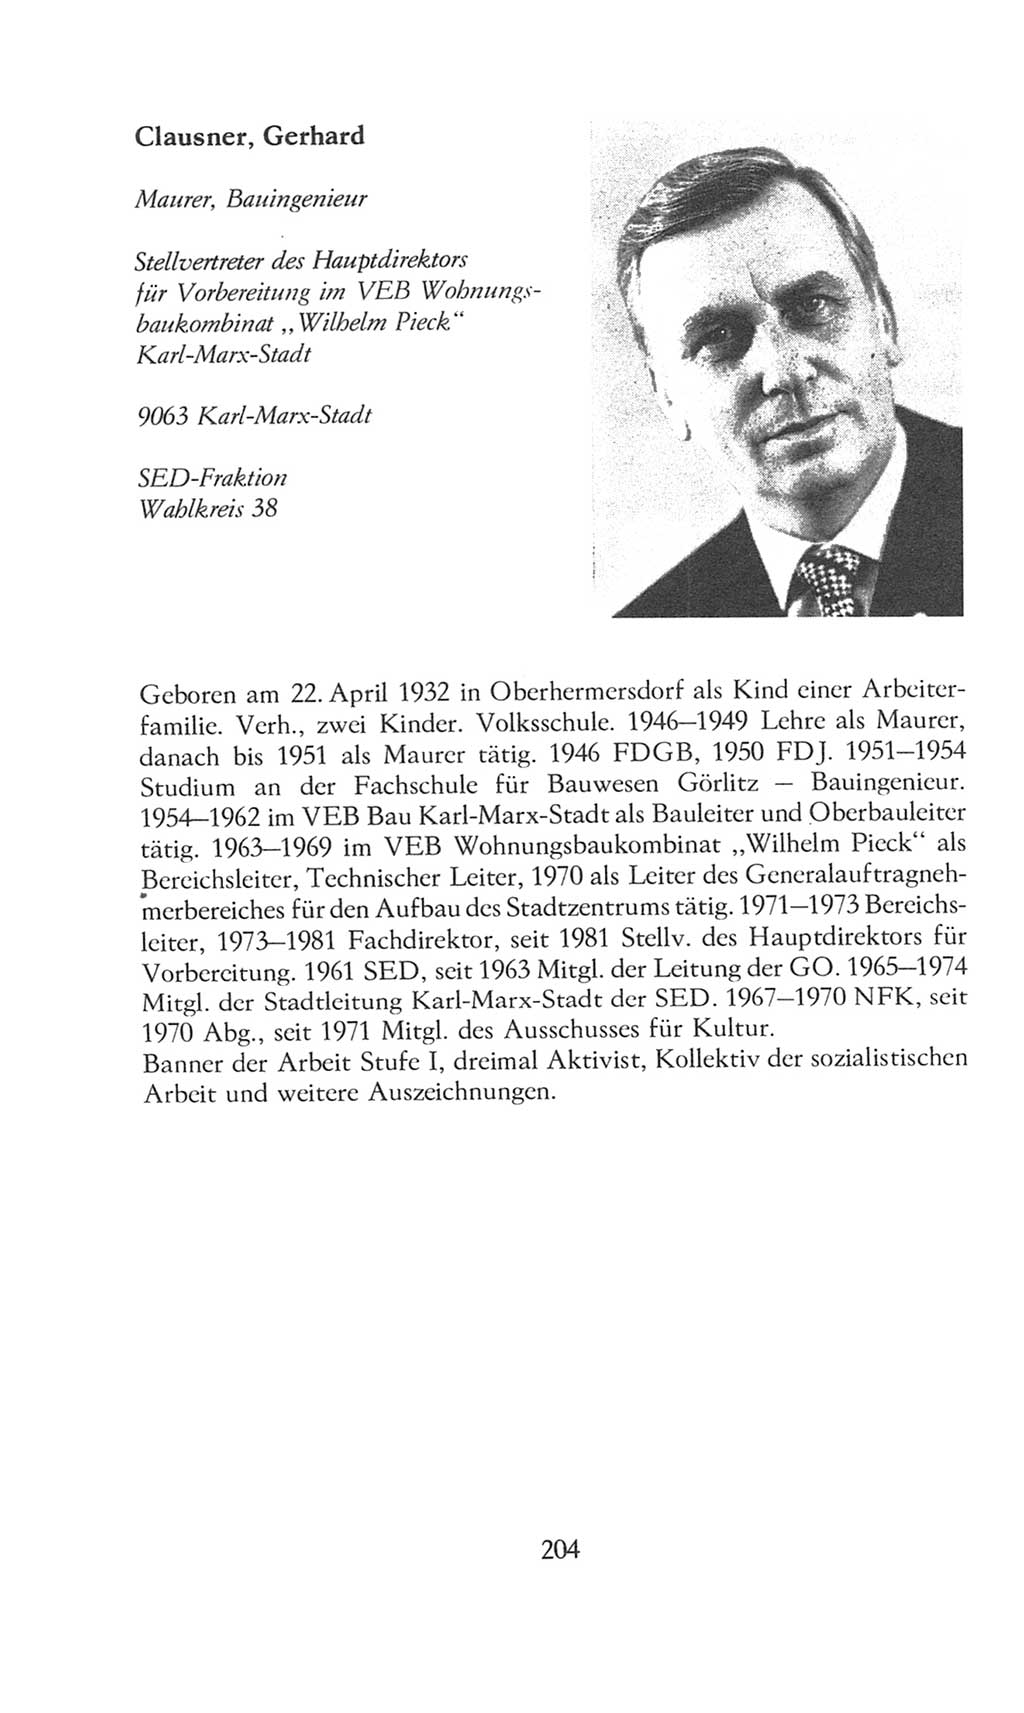 Volkskammer (VK) der Deutschen Demokratischen Republik (DDR), 8. Wahlperiode 1981-1986, Seite 204 (VK. DDR 8. WP. 1981-1986, S. 204)